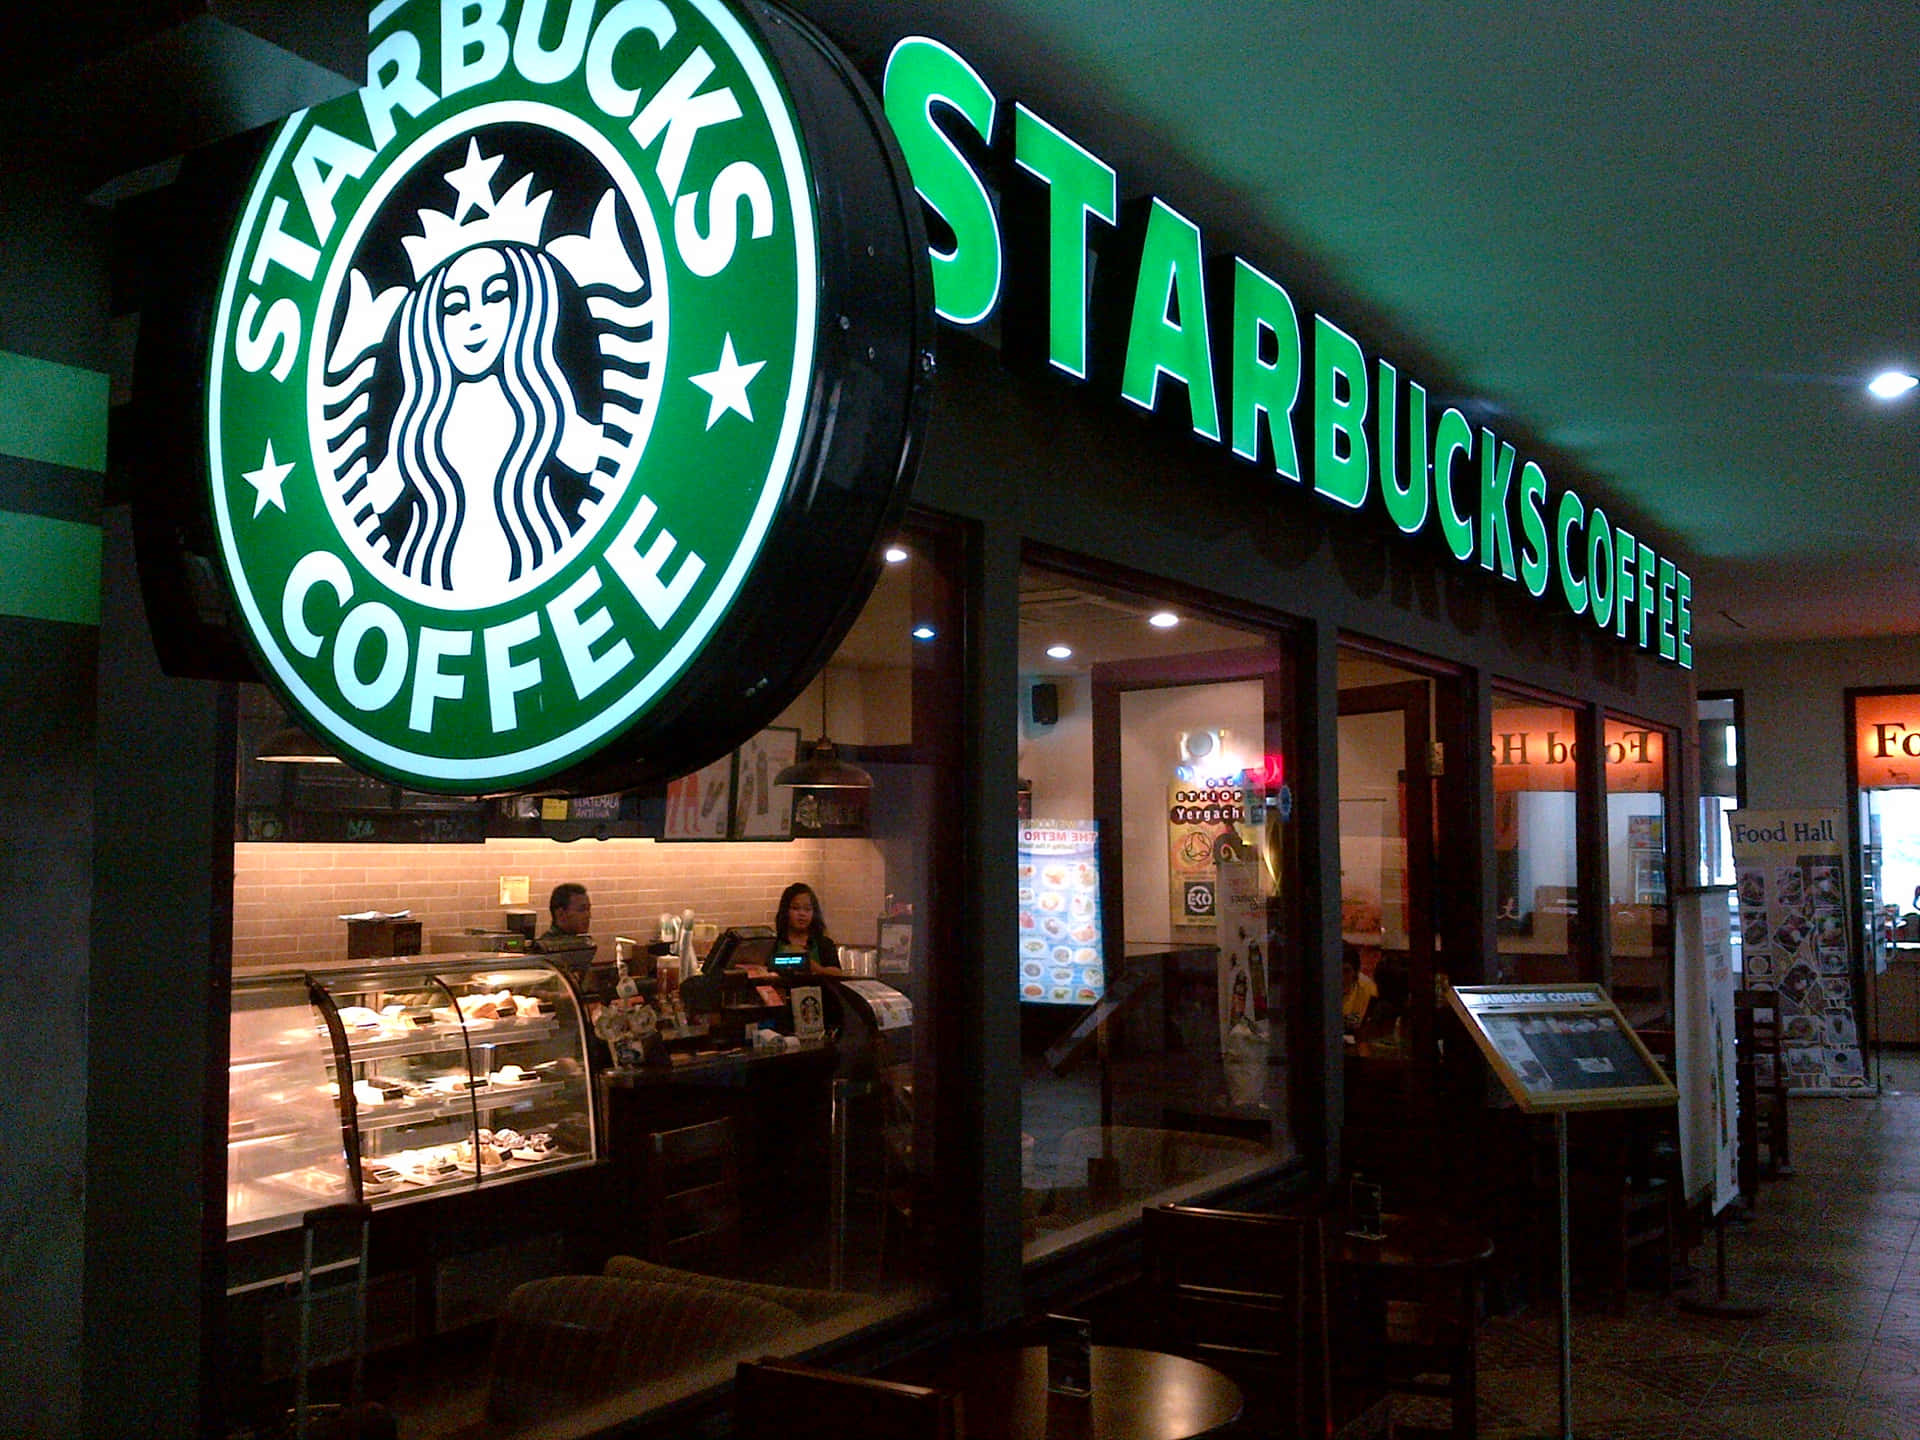 Prendiil Tuo Starbucks Quotidiano E Goditi La Pausa Caffè